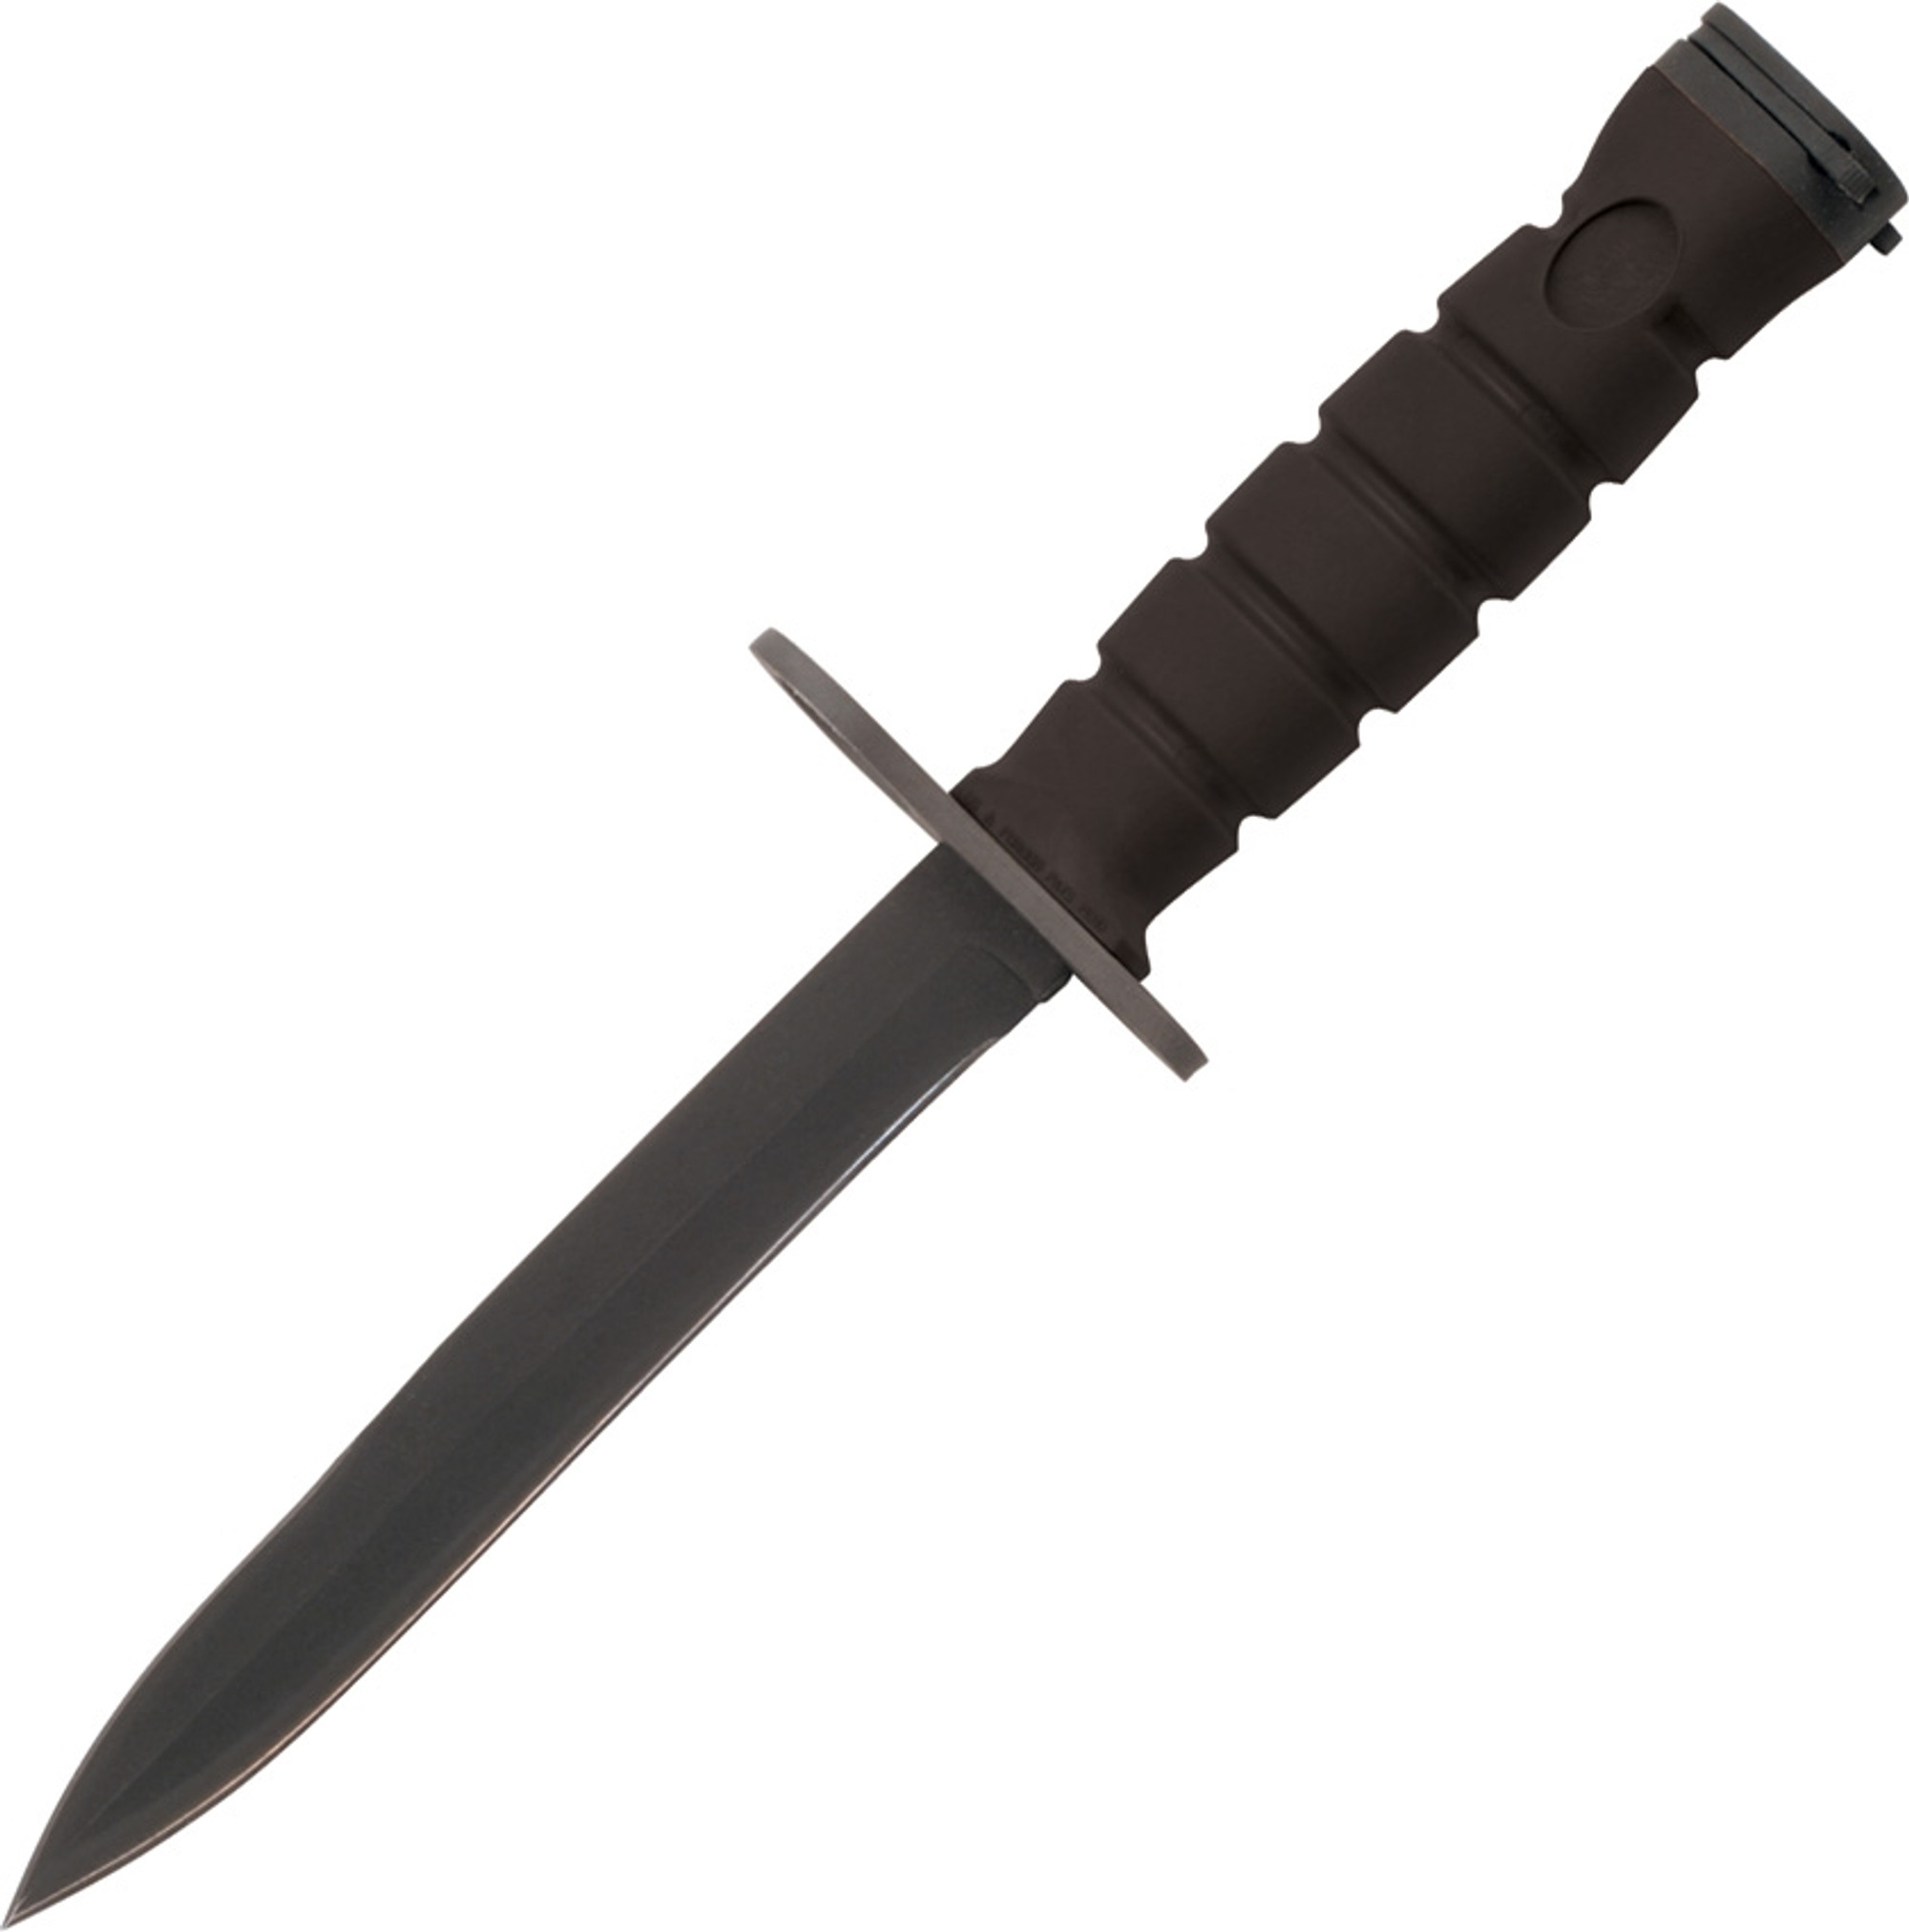 M7-B Combat Knife